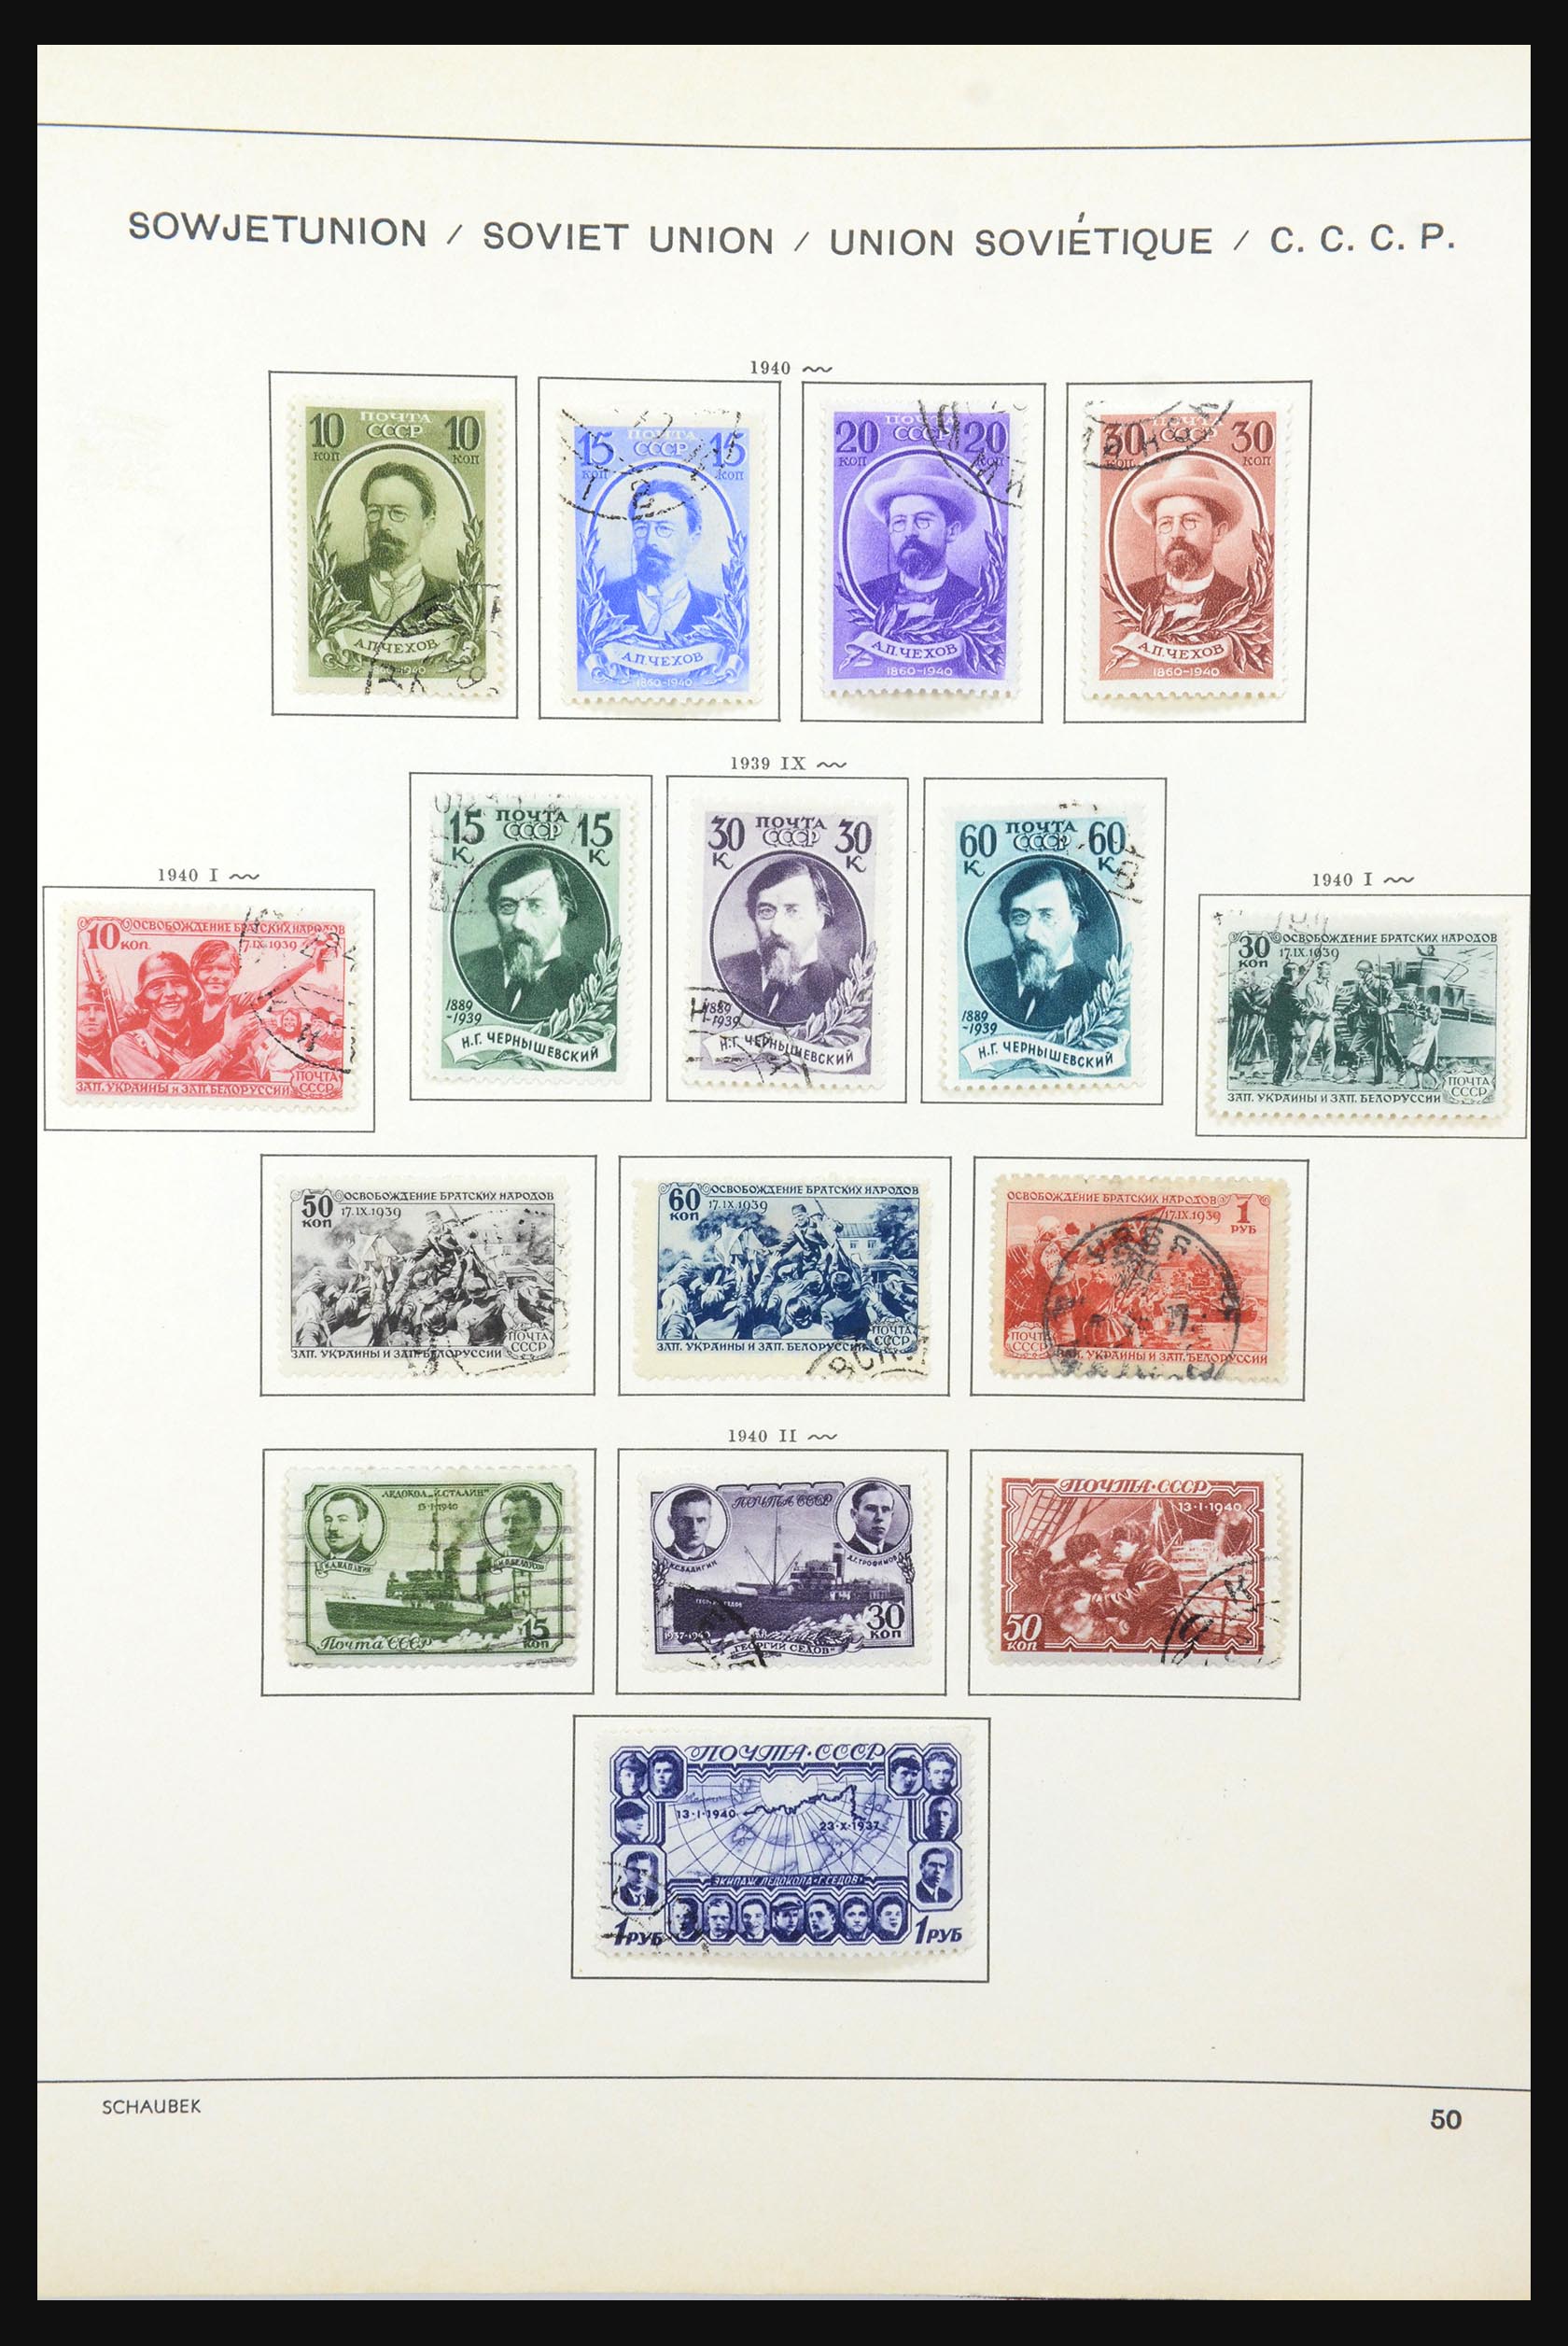 31651 077 - 31651 Russia 1858-1959.